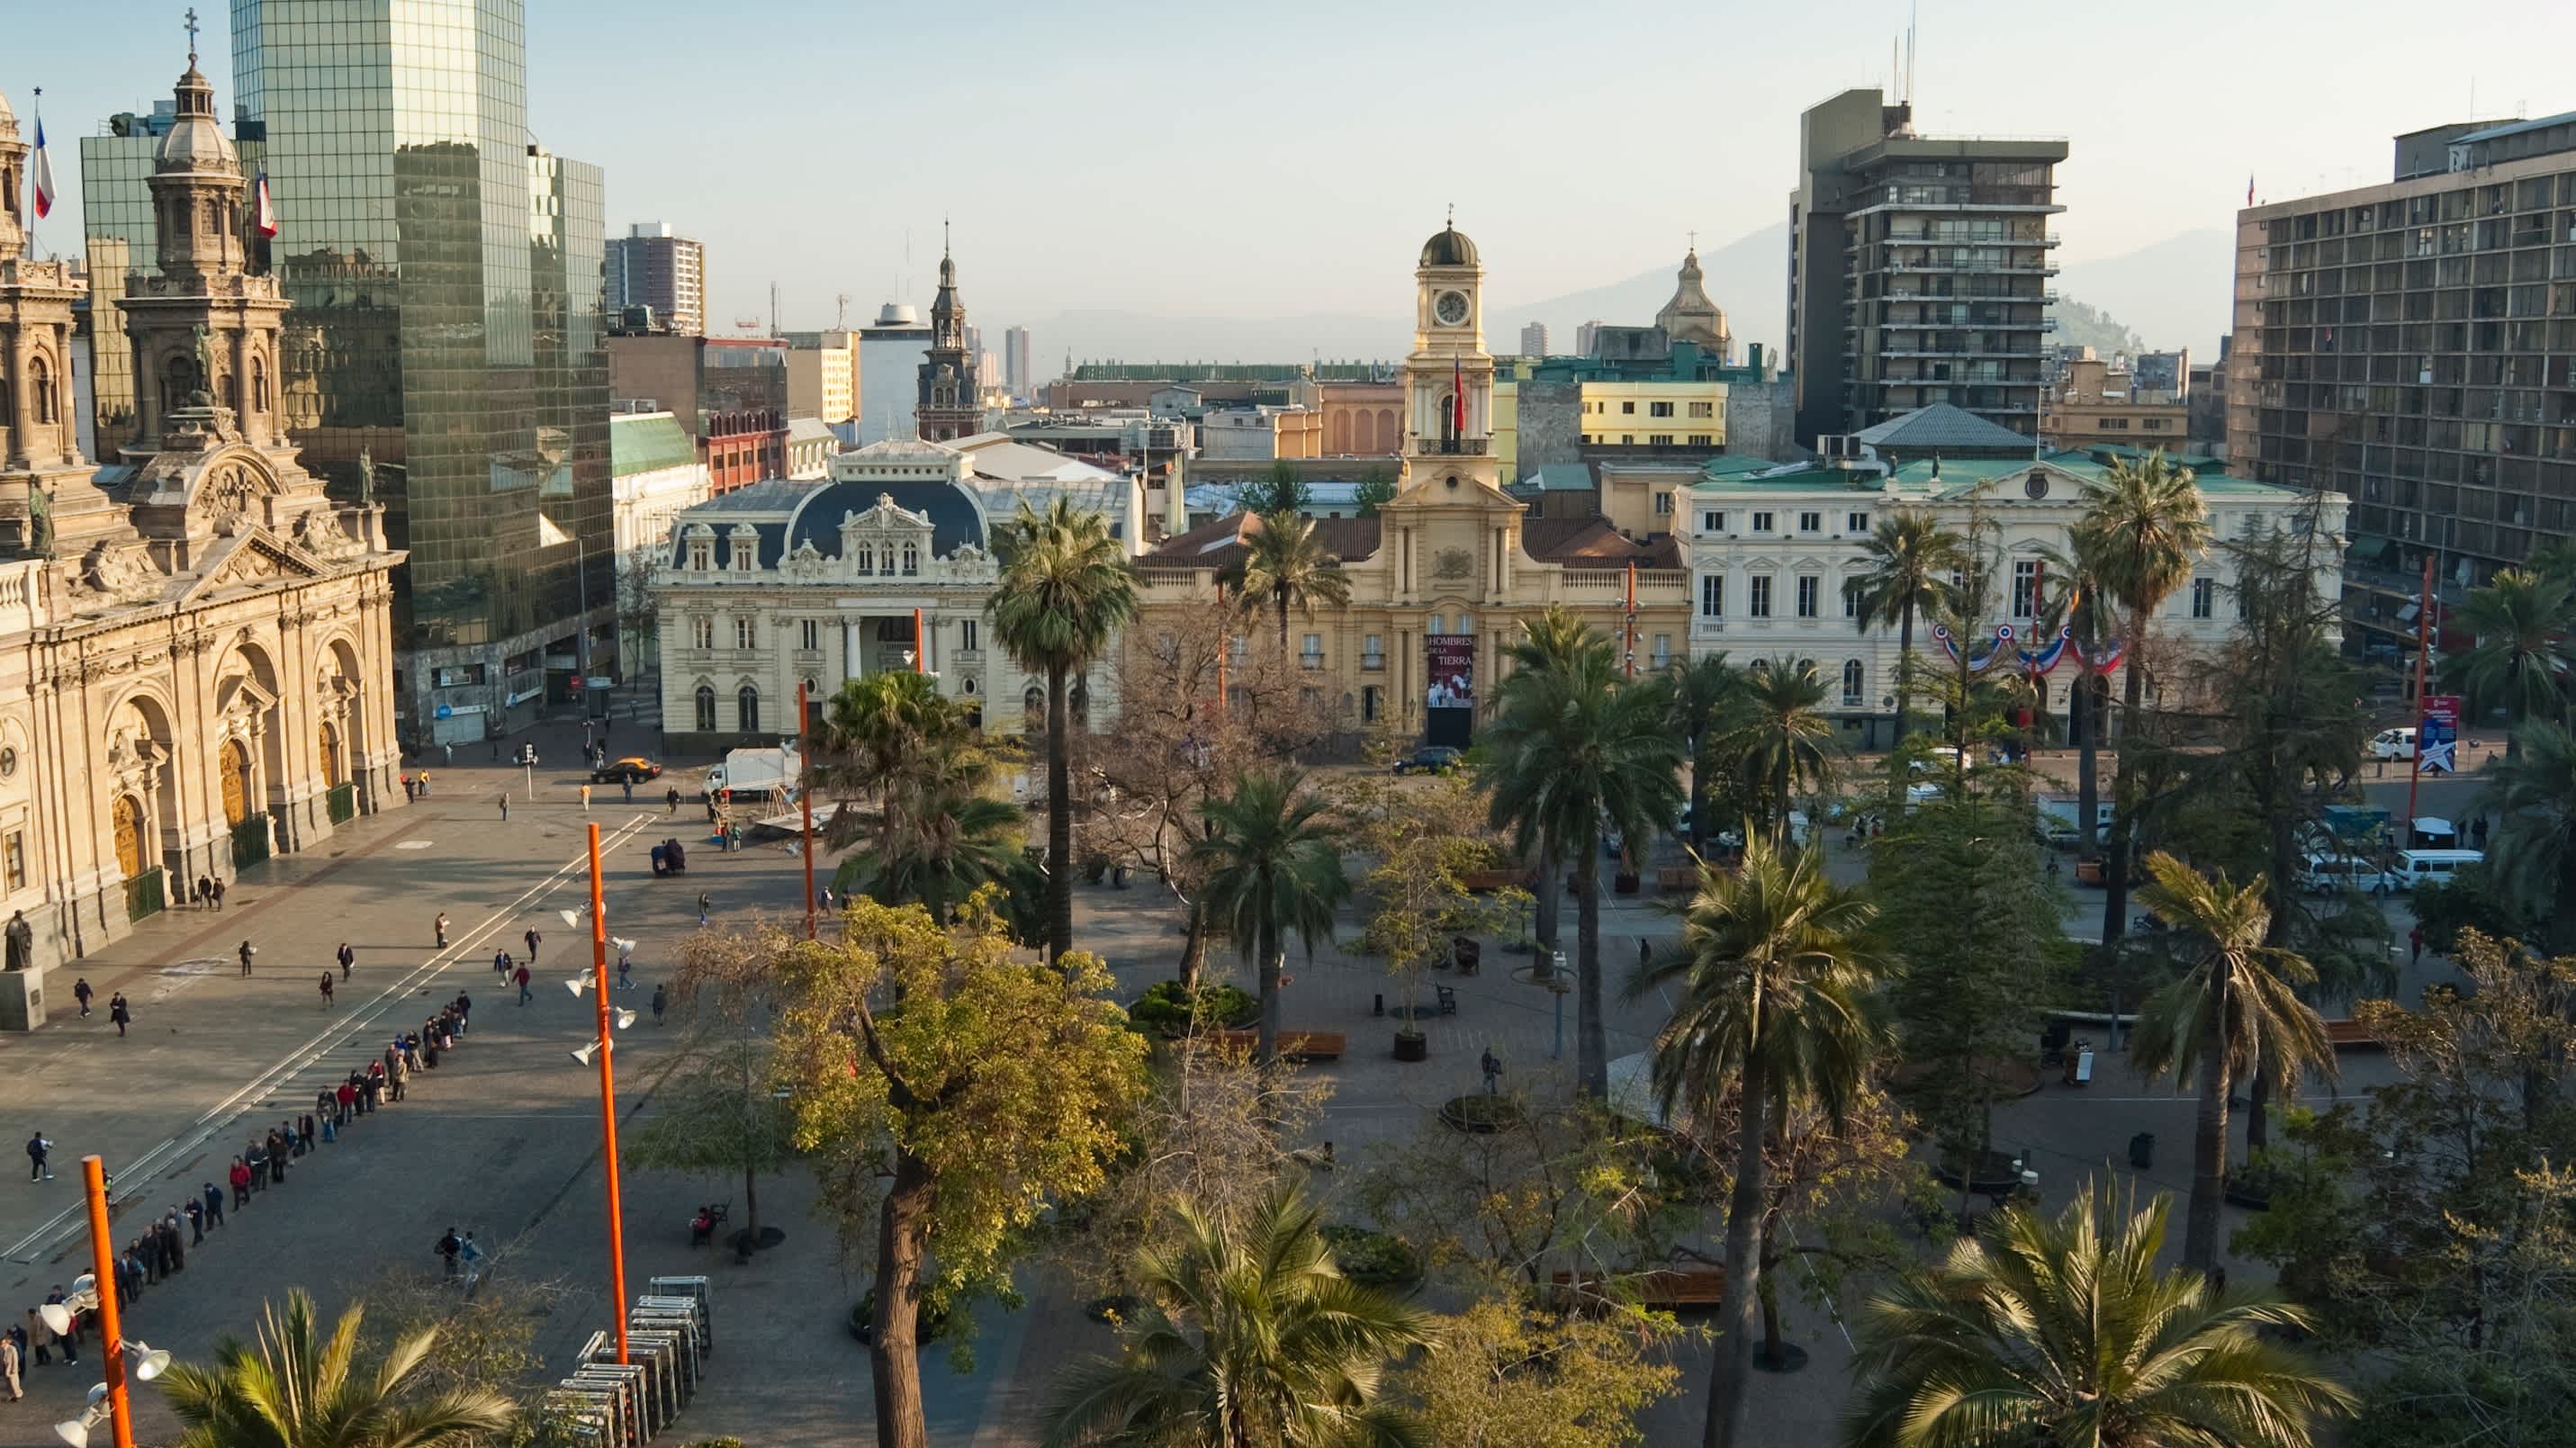 Vue aérienne sur la Plaza de Armas, l'une des places les plus populaires de la capitale Santiago que vous pourrez découvrir pendant votre voyage au Chili.